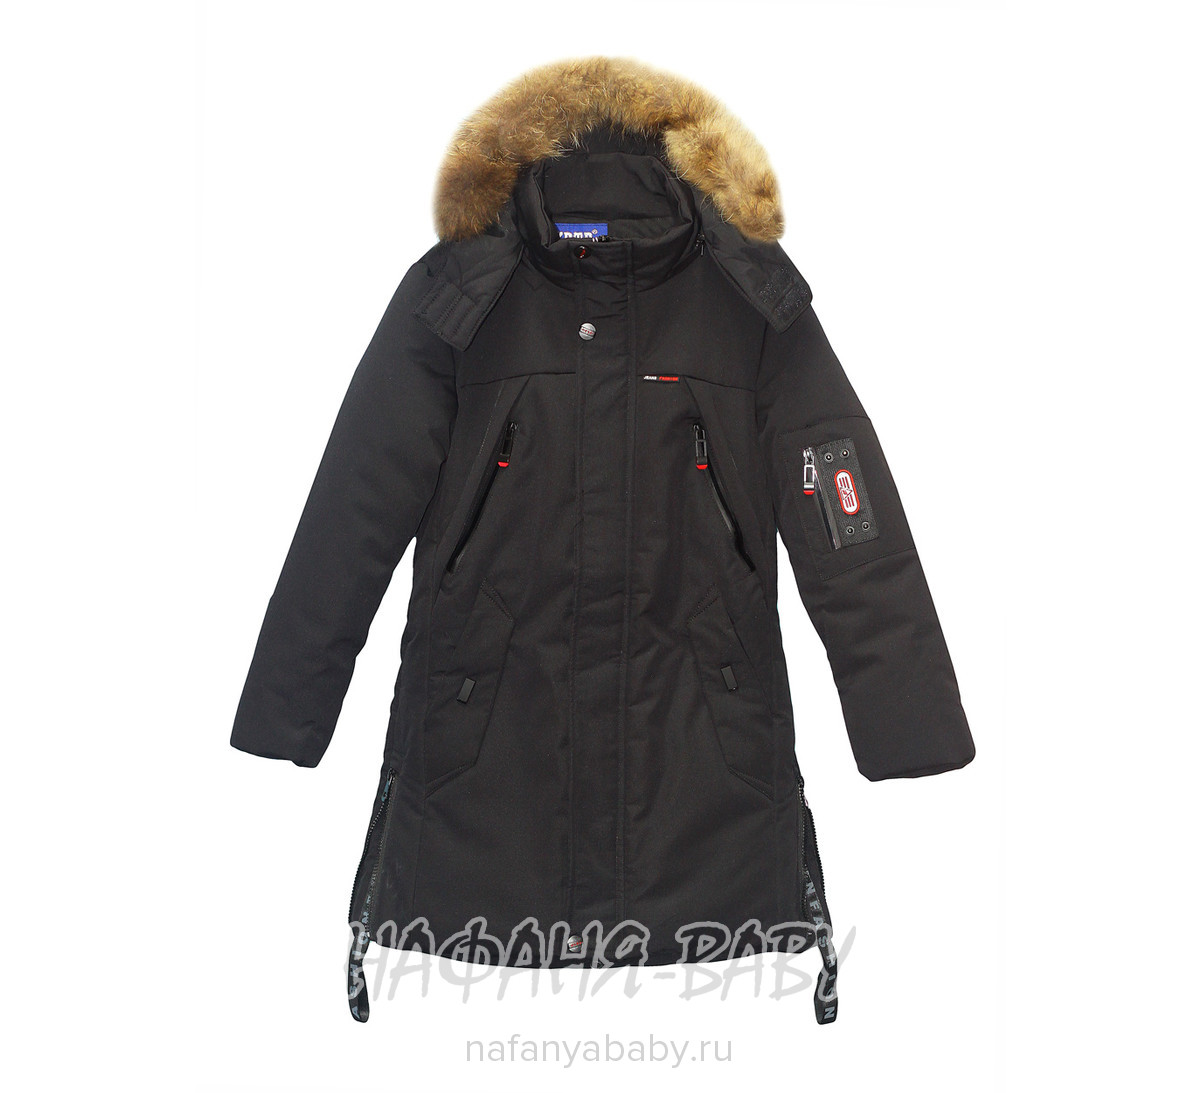 Удлиненная зимняя куртка XRTR арт: 691, 10-15 лет, 5-9 лет, оптом Китай (Пекин)